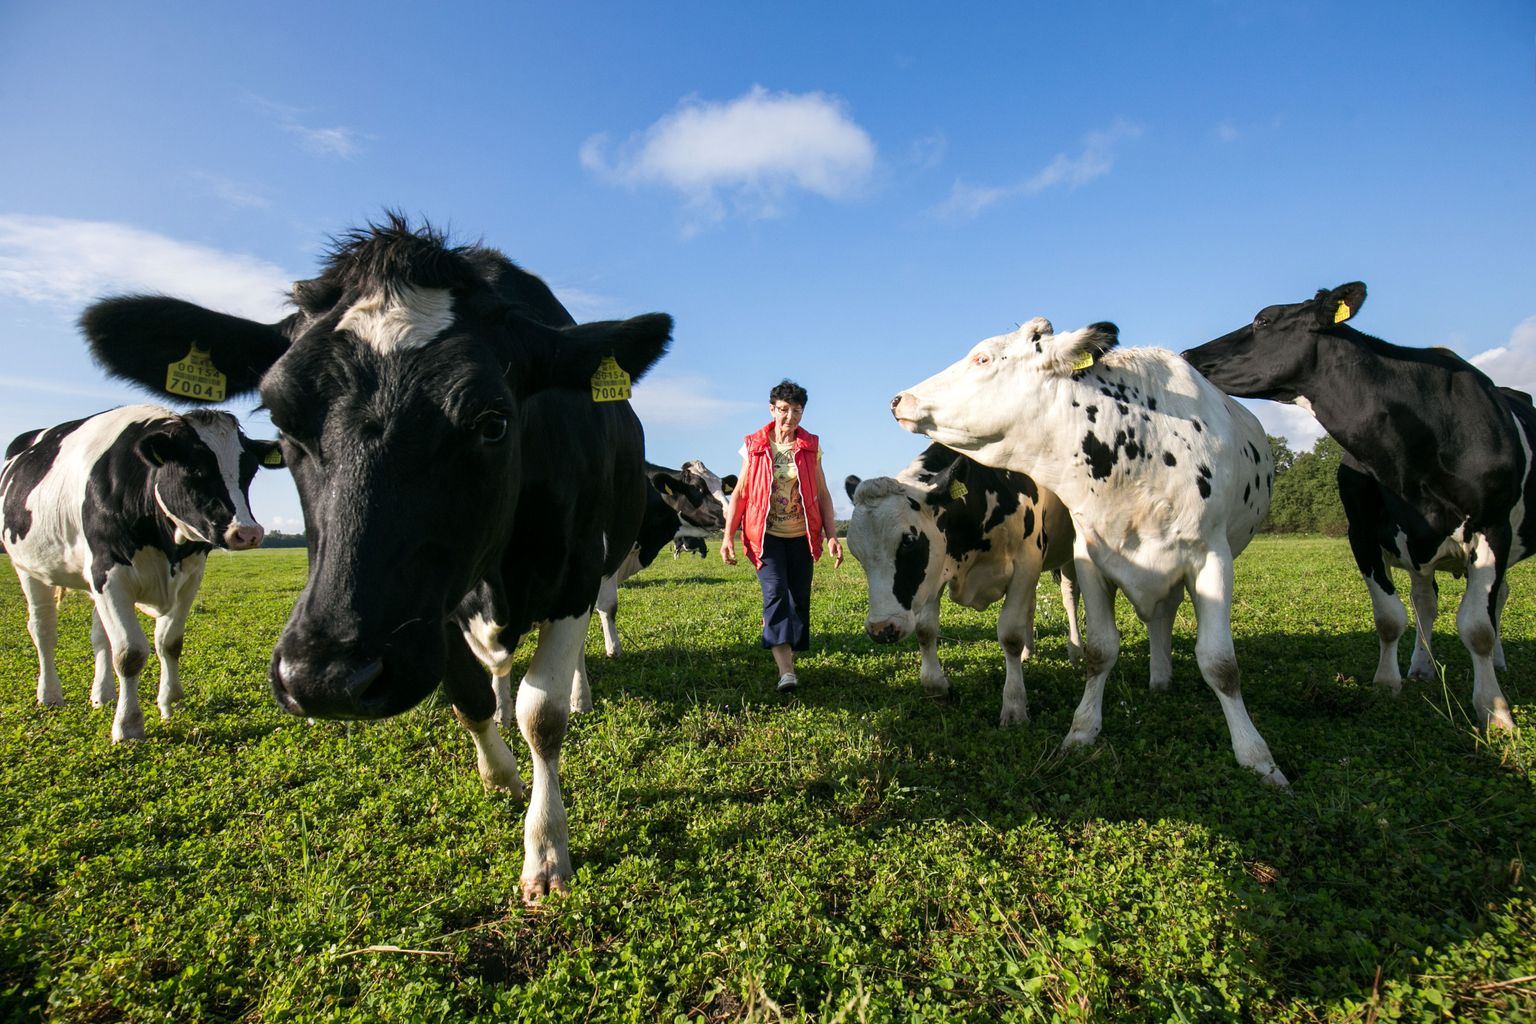 Kuigi riik suunab suure summa uude kõrgtehnoloogilisse piimatööstusse, on terve rida piimakarjapidajaid juba aasta aega piima madala kokkuostu hinna tõttu oma karjasid likvideerima asunud. Sama otsuse tegi möödunud septembris ka Albu vallas Tõnno talus 25 aastat koos abikaasaga lehmi pidanud Juta Hominit.